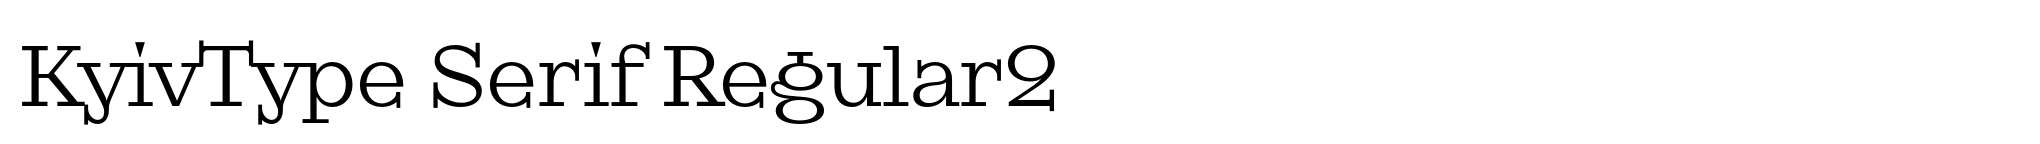 KyivType Serif Regular2 image